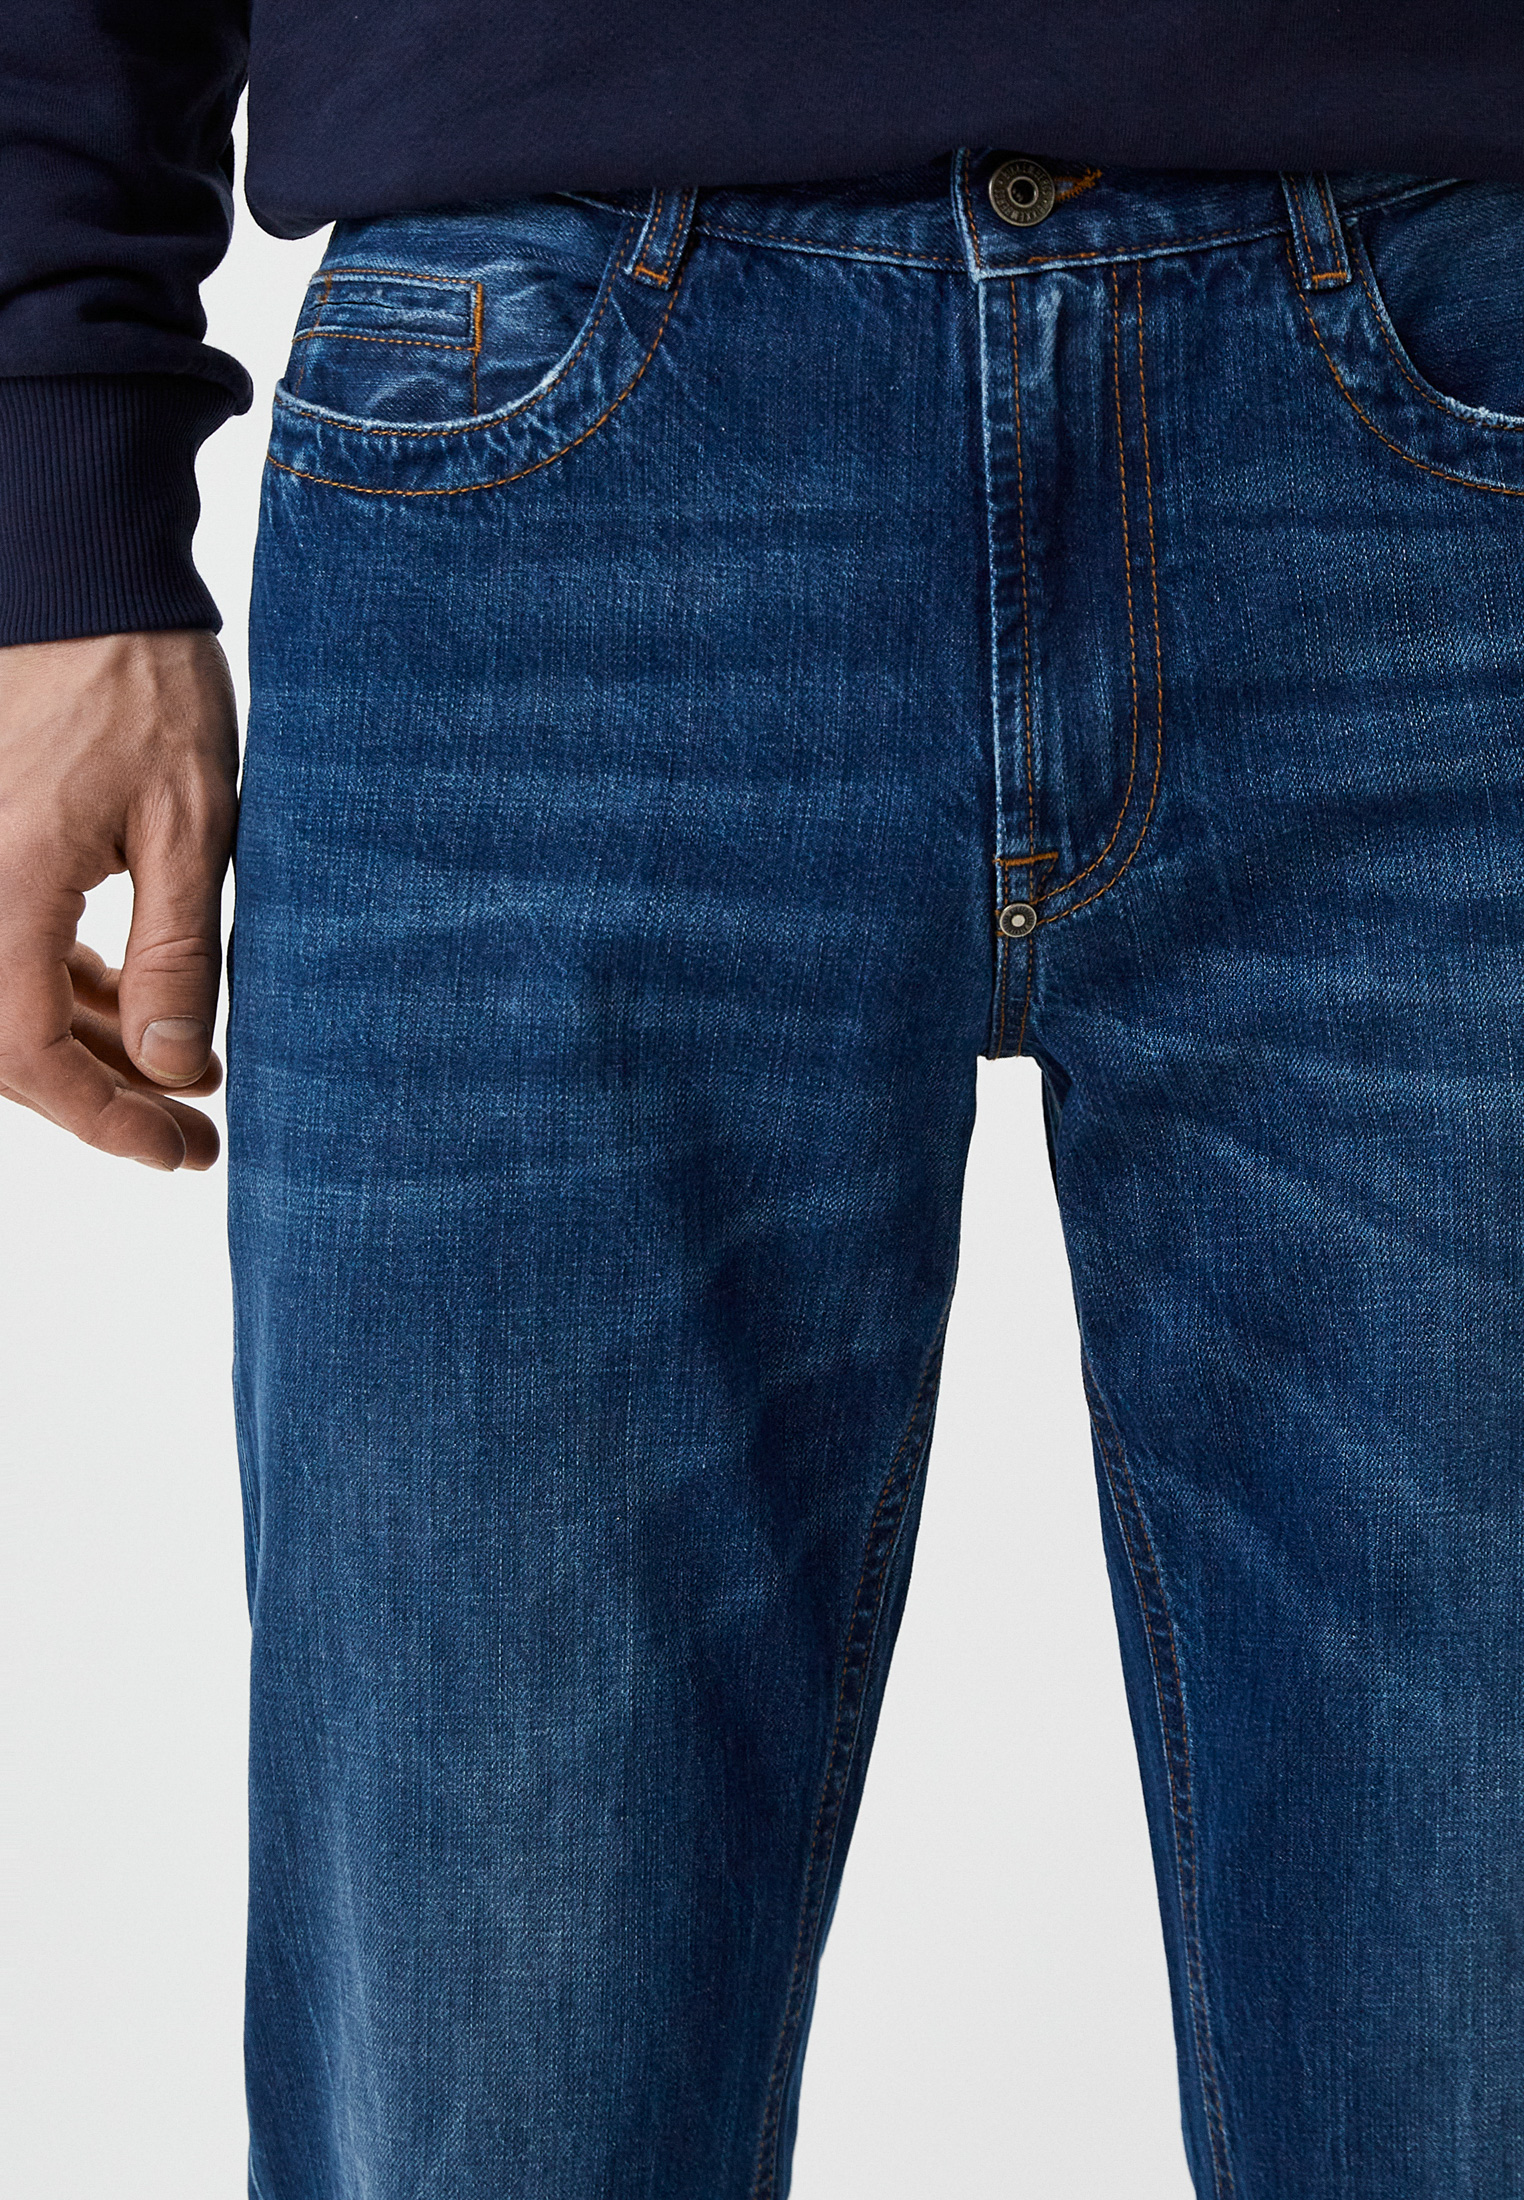 Мужские прямые джинсы Bikkembergs (Биккембергс) C Q 102 03 T 9974: изображение 8